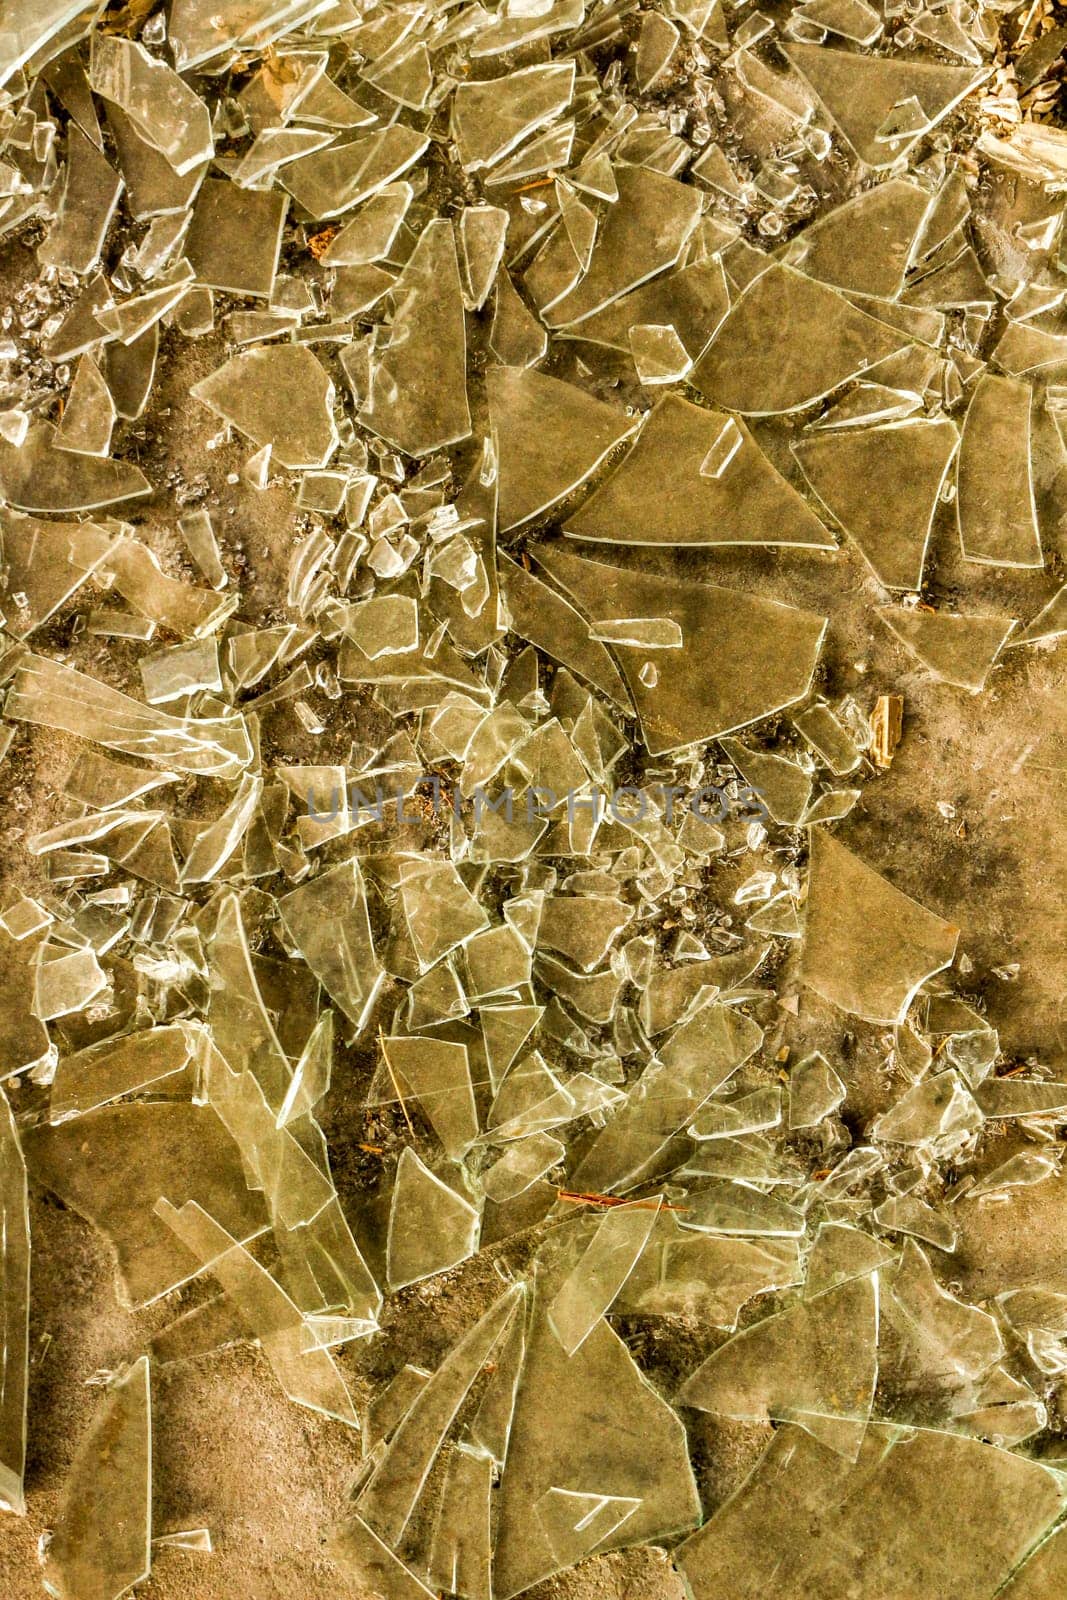 Shattered Reflections: Broken Glass Texture by DakotaBOldeman